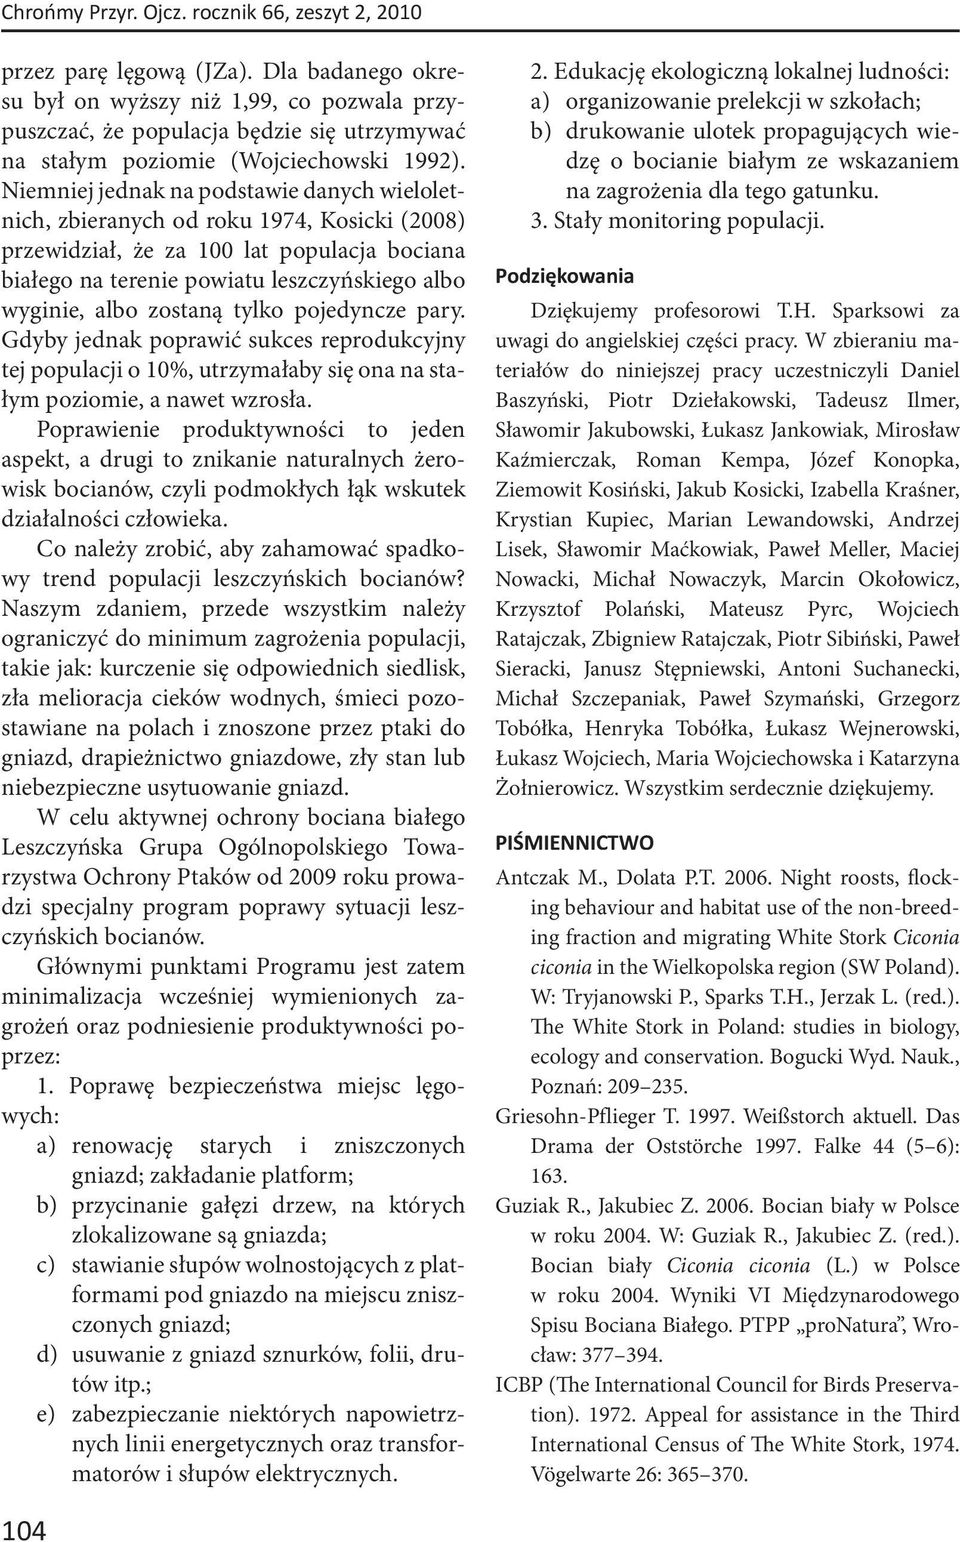 Niemniej jednak na podstawie danych wieloletnich, zbieranych od roku 1974, Kosicki (2008) przewidział, że za 100 lat populacja bociana białego na terenie powiatu leszczyńskiego albo wyginie, albo